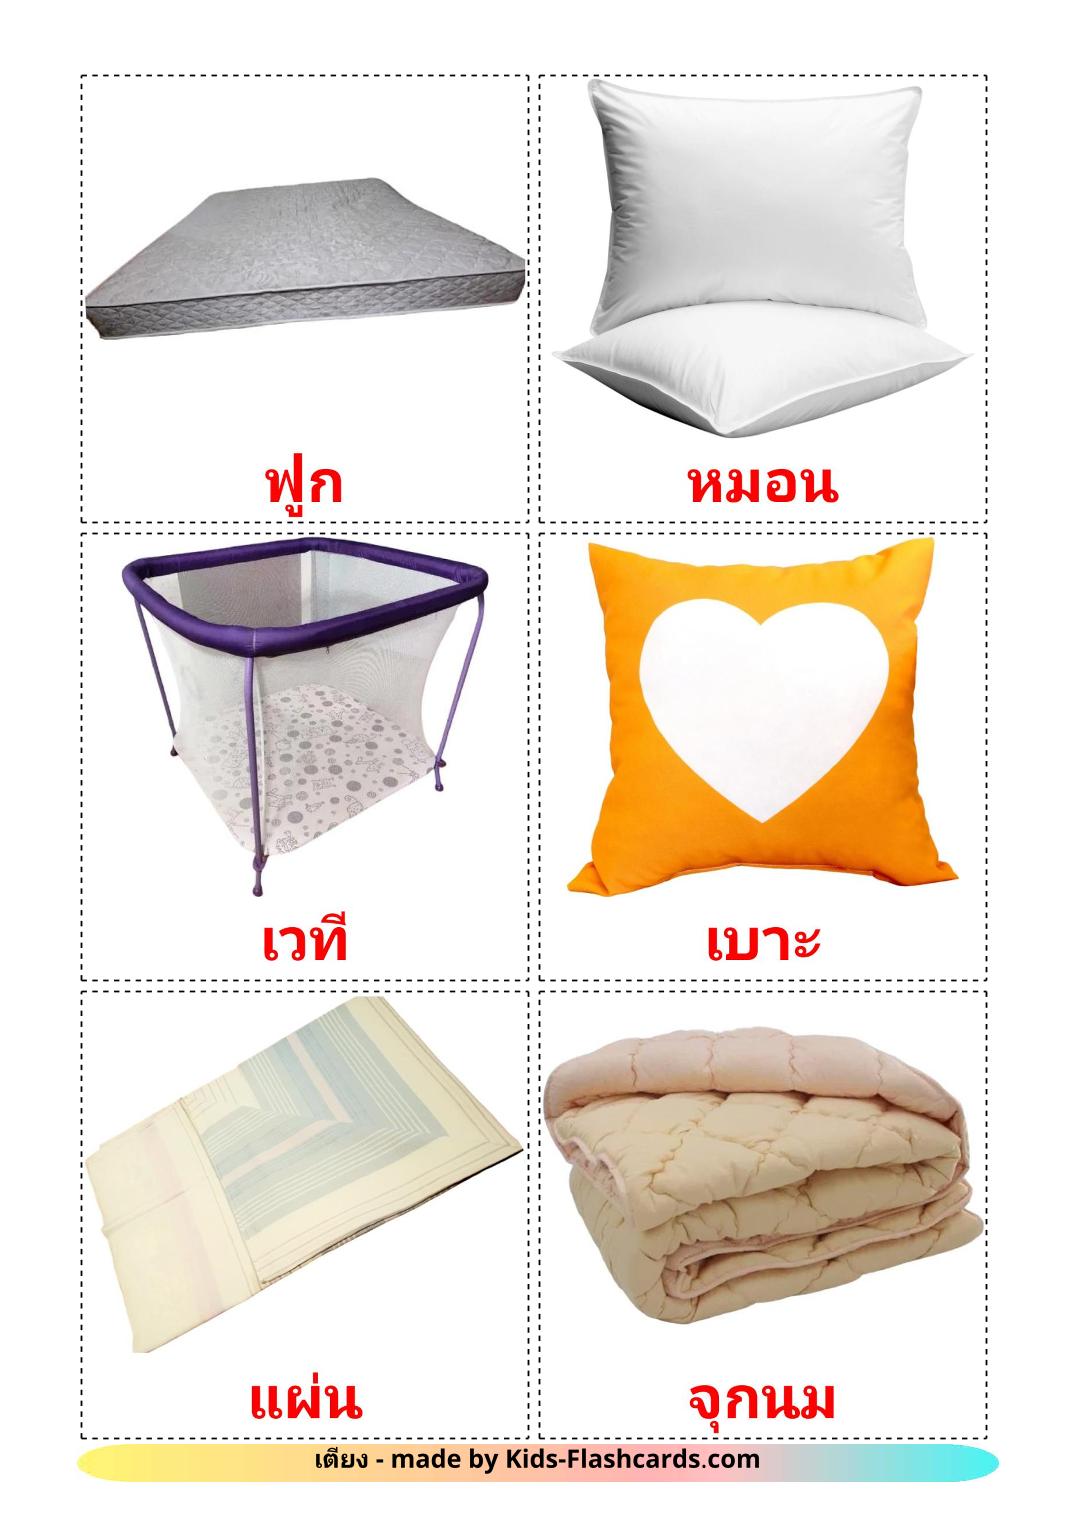 Bed - 14 gratis printbare thaise kaarten